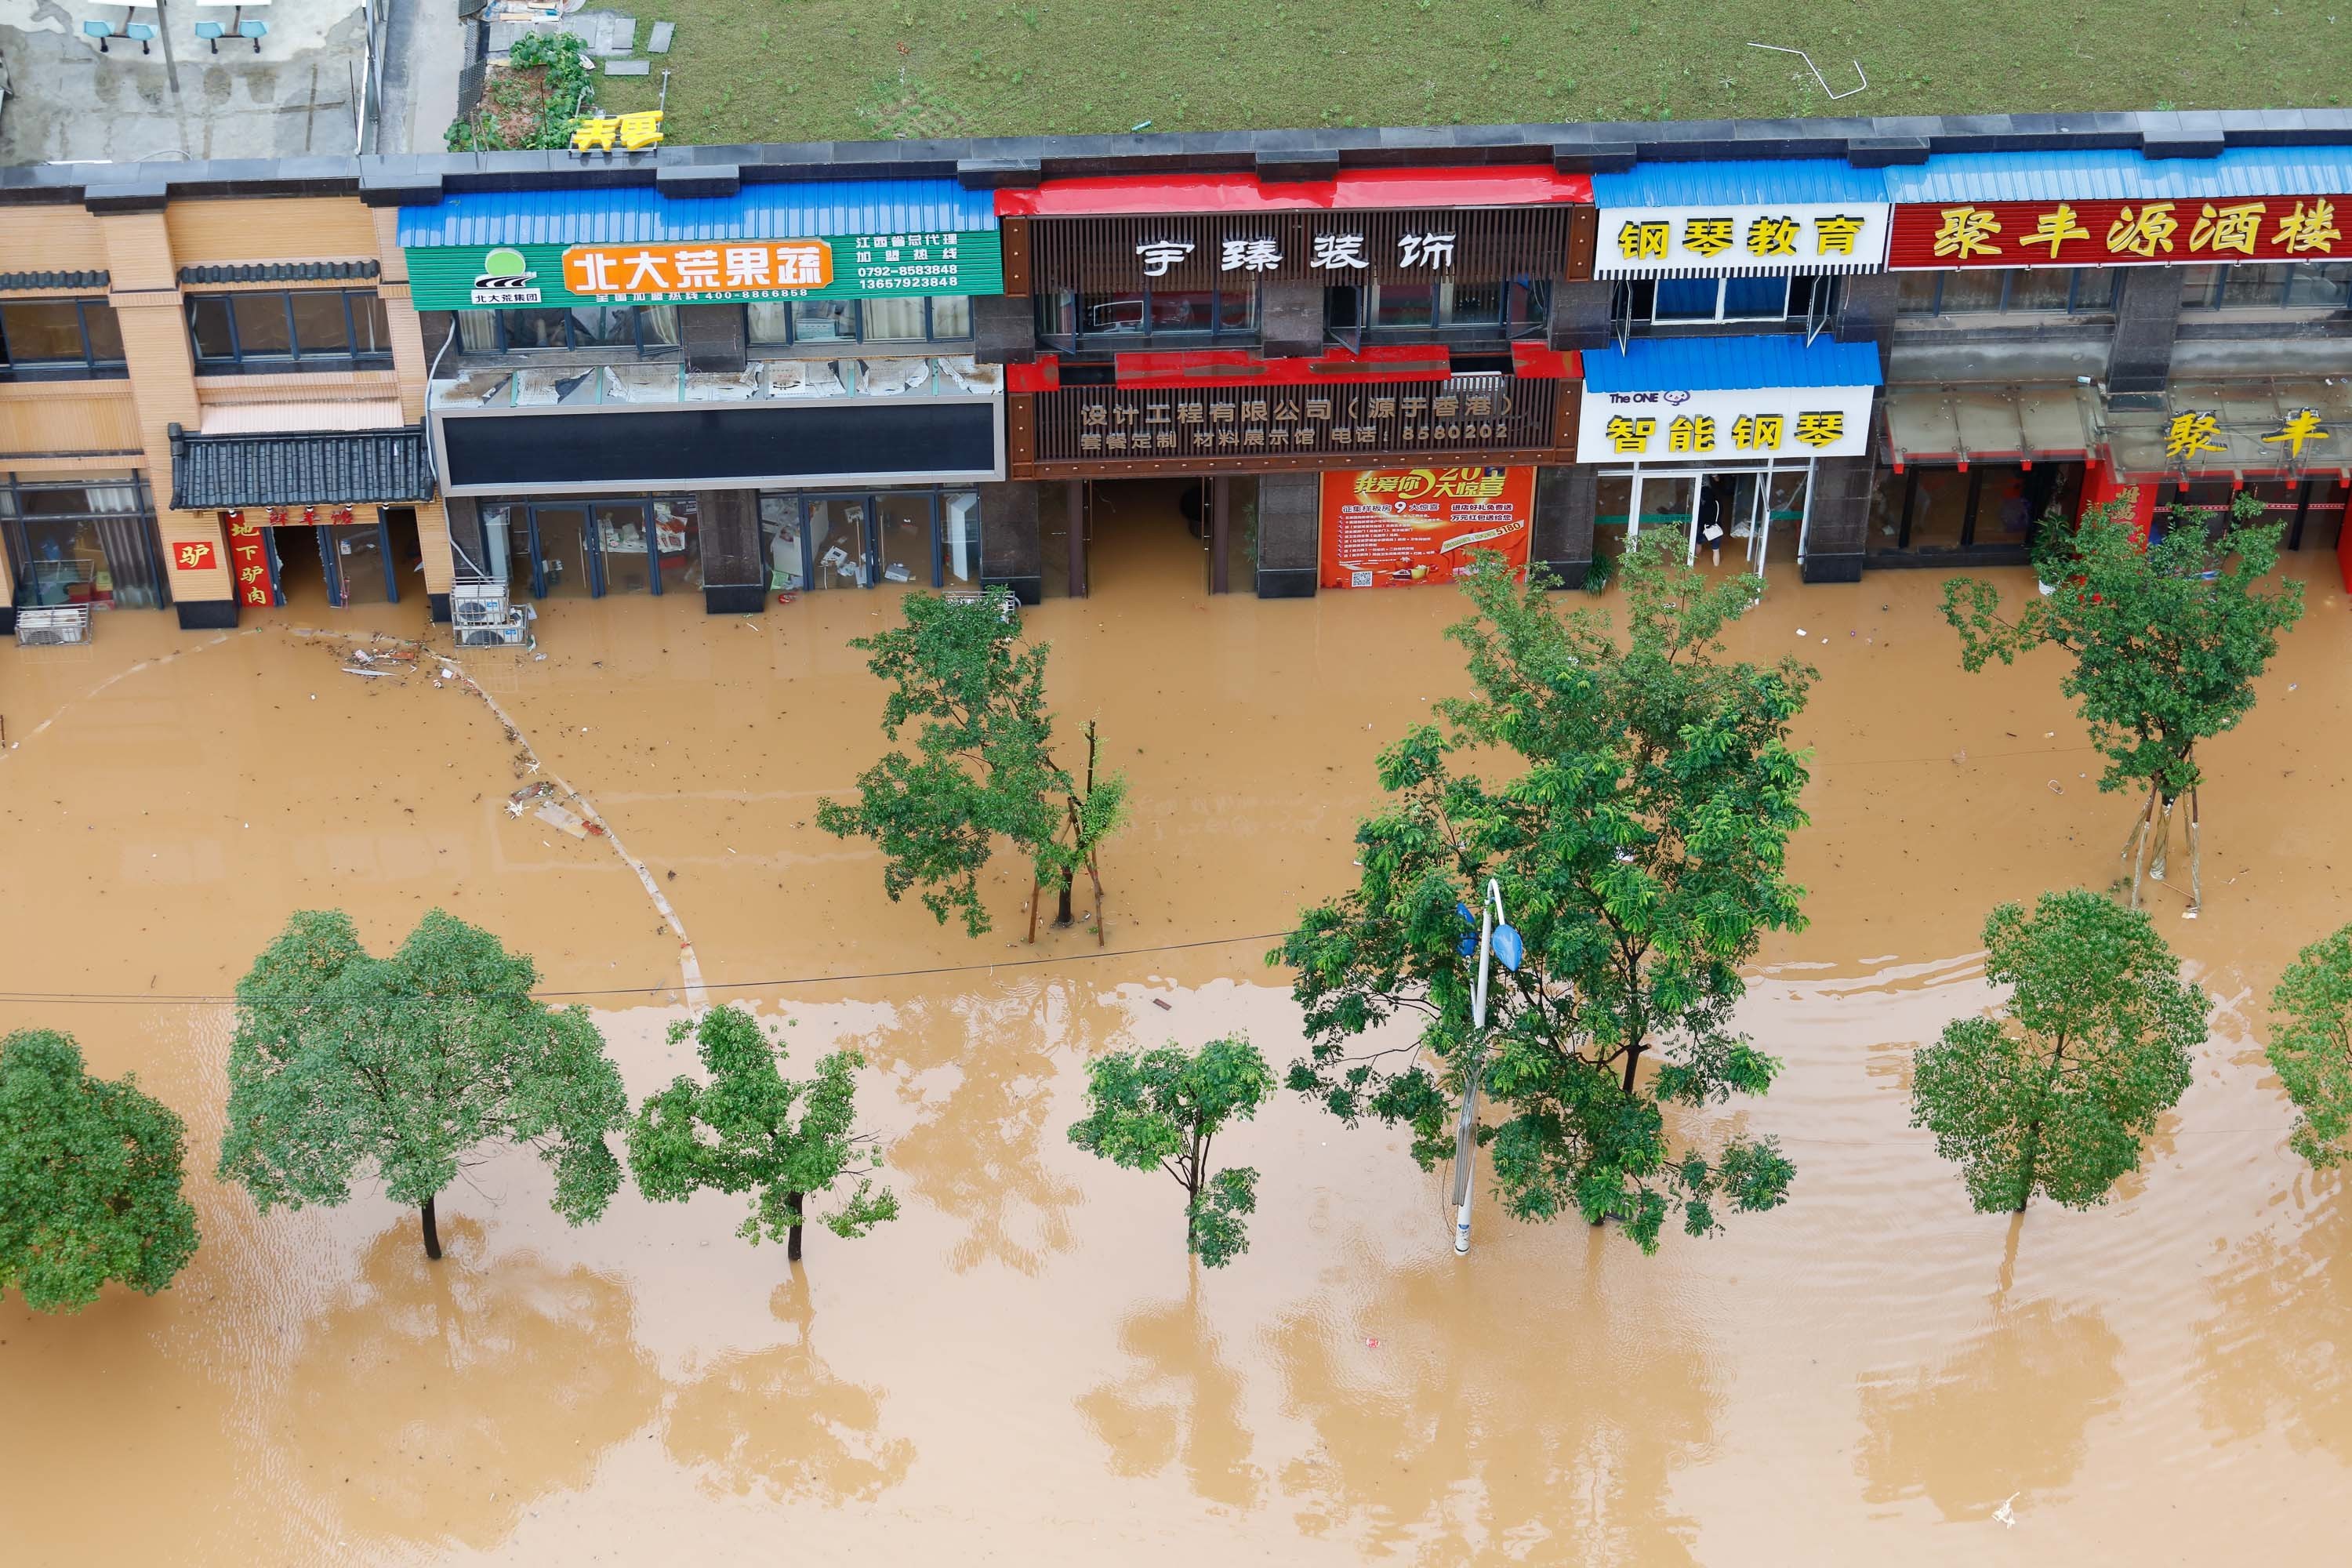 China se transforma en ciudades esponja para frenar inundaciones